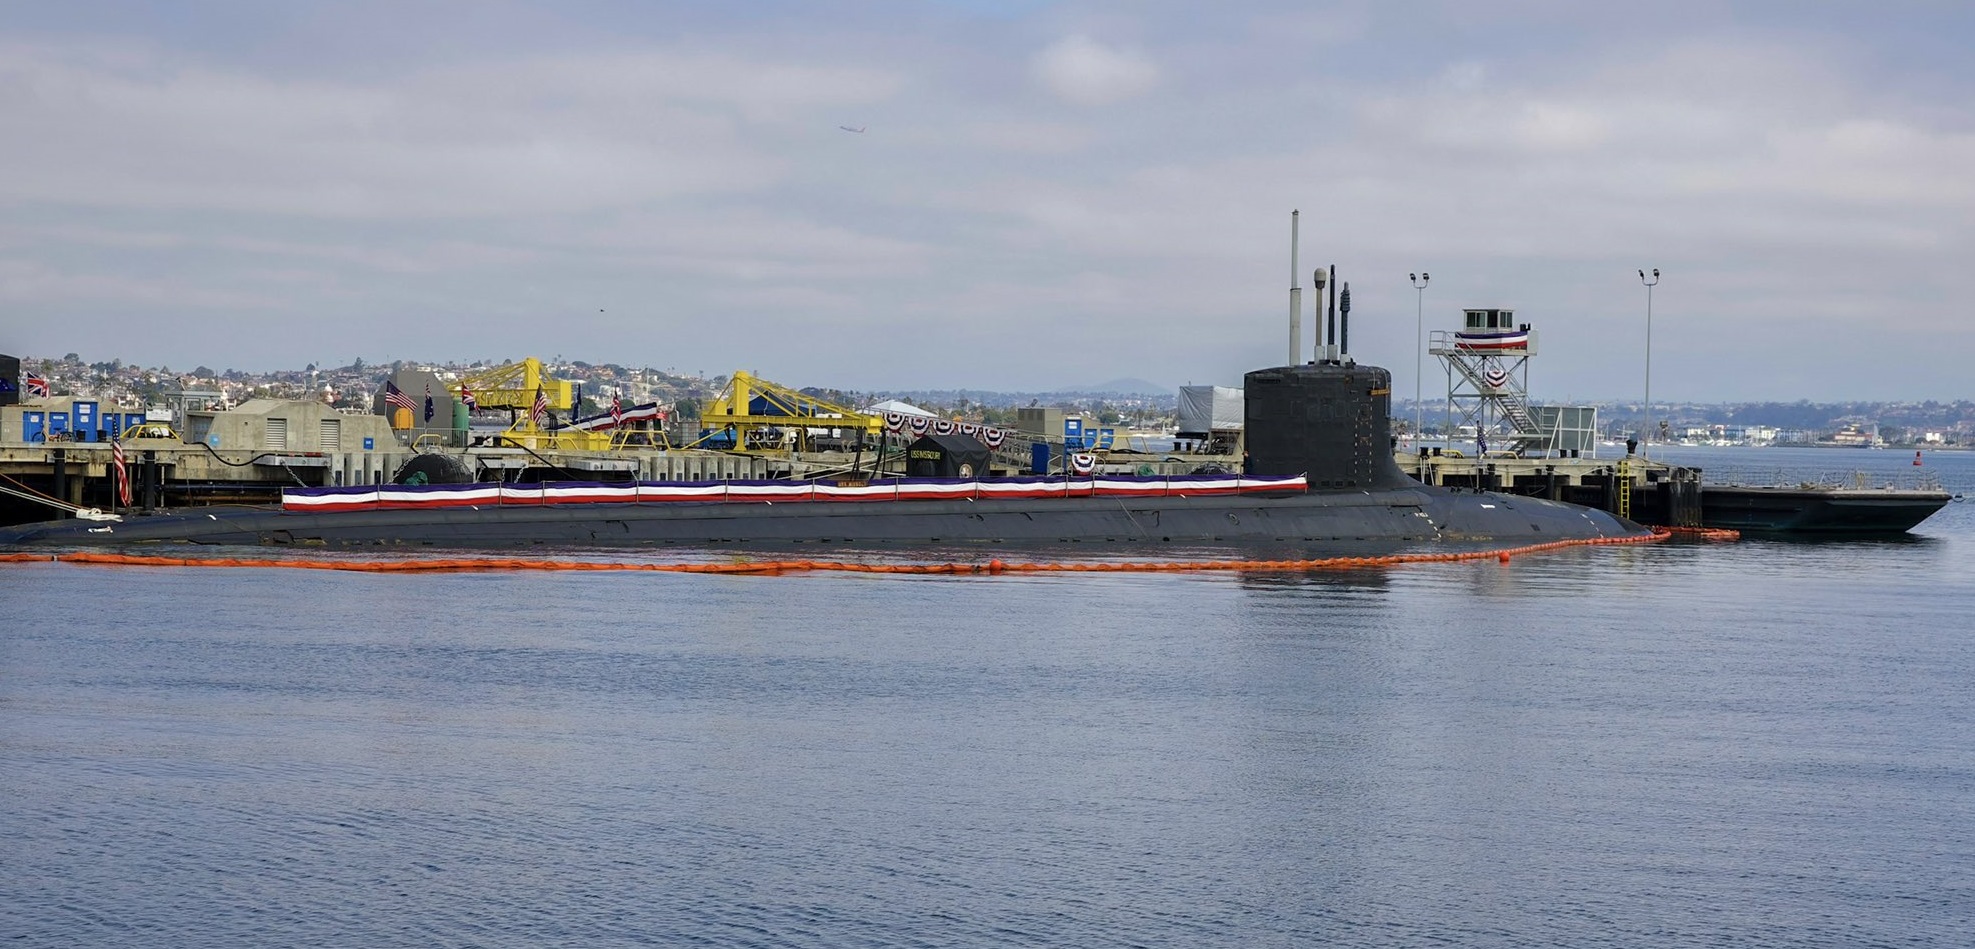 Австралія купить три атомні субмарини Virginia та почне виробляти підводні човни AUKUS з ядерною силовою установкою спільно з Великою Британією і США - новий проєкт потребуватиме $245 млрд